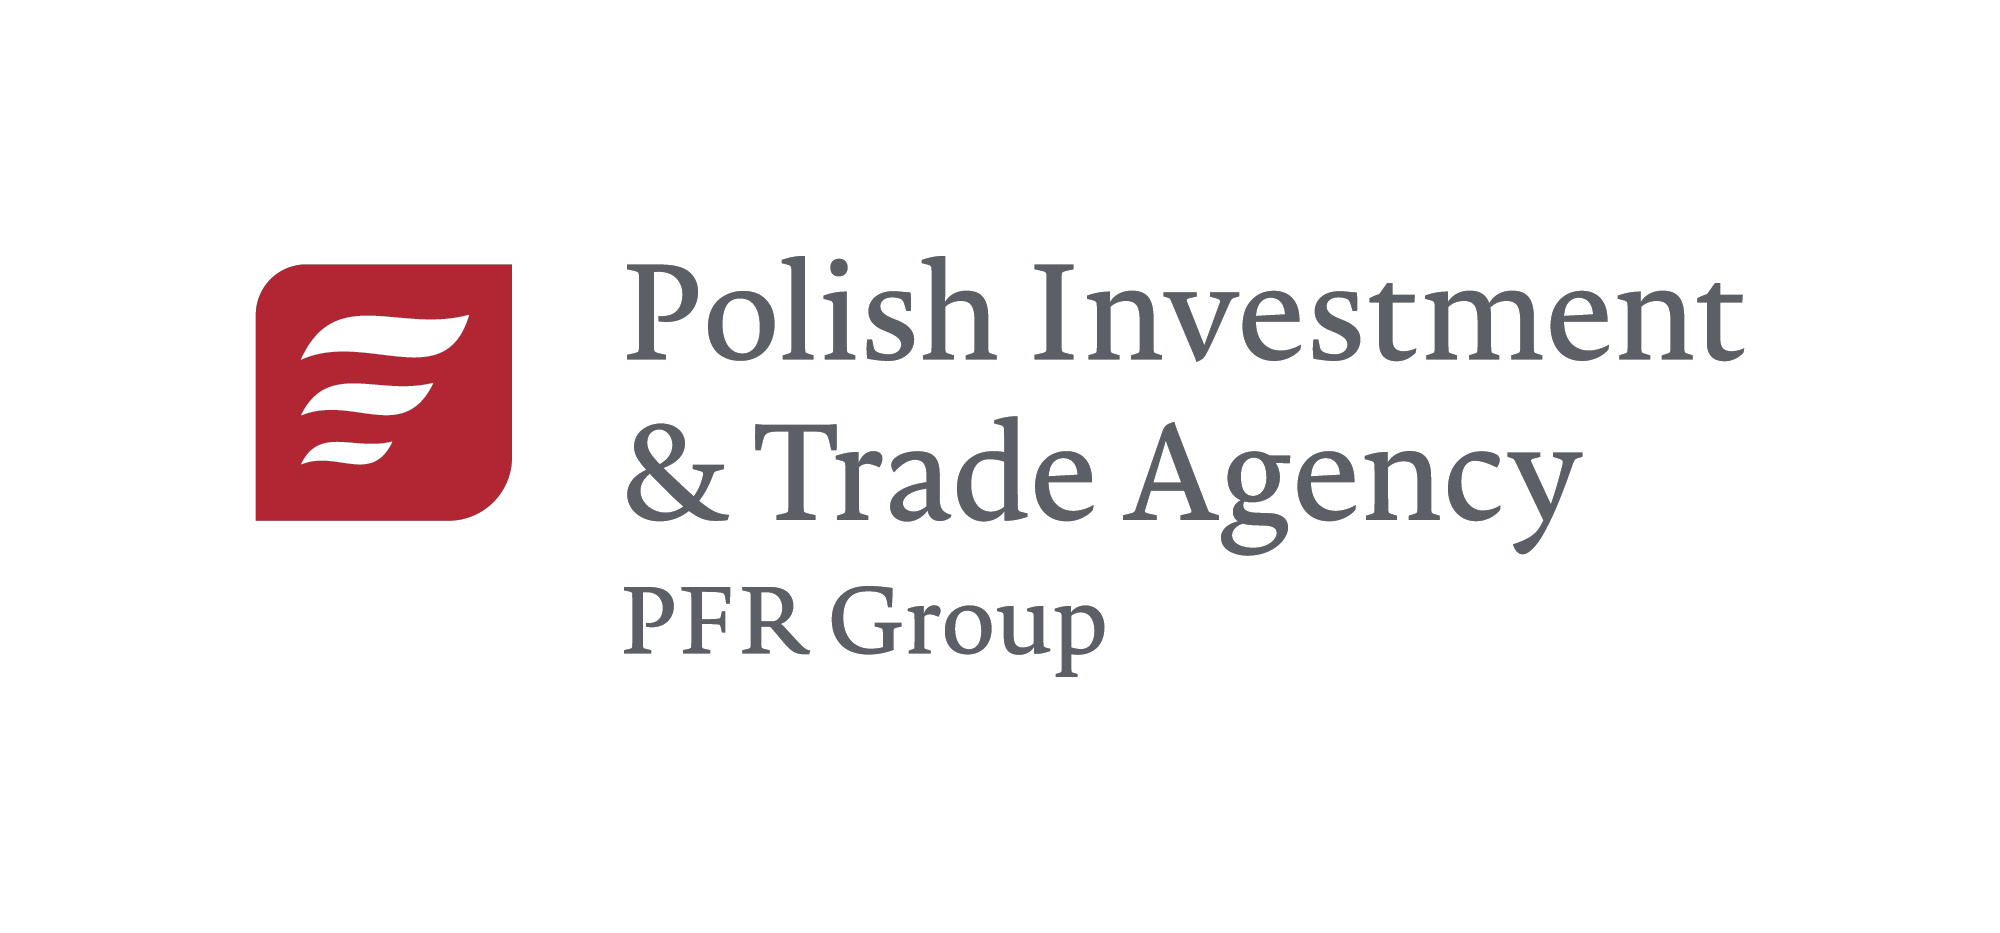 另開視窗，連結到波蘭投資及貿易局 (Polish Investment & Trade Agency)